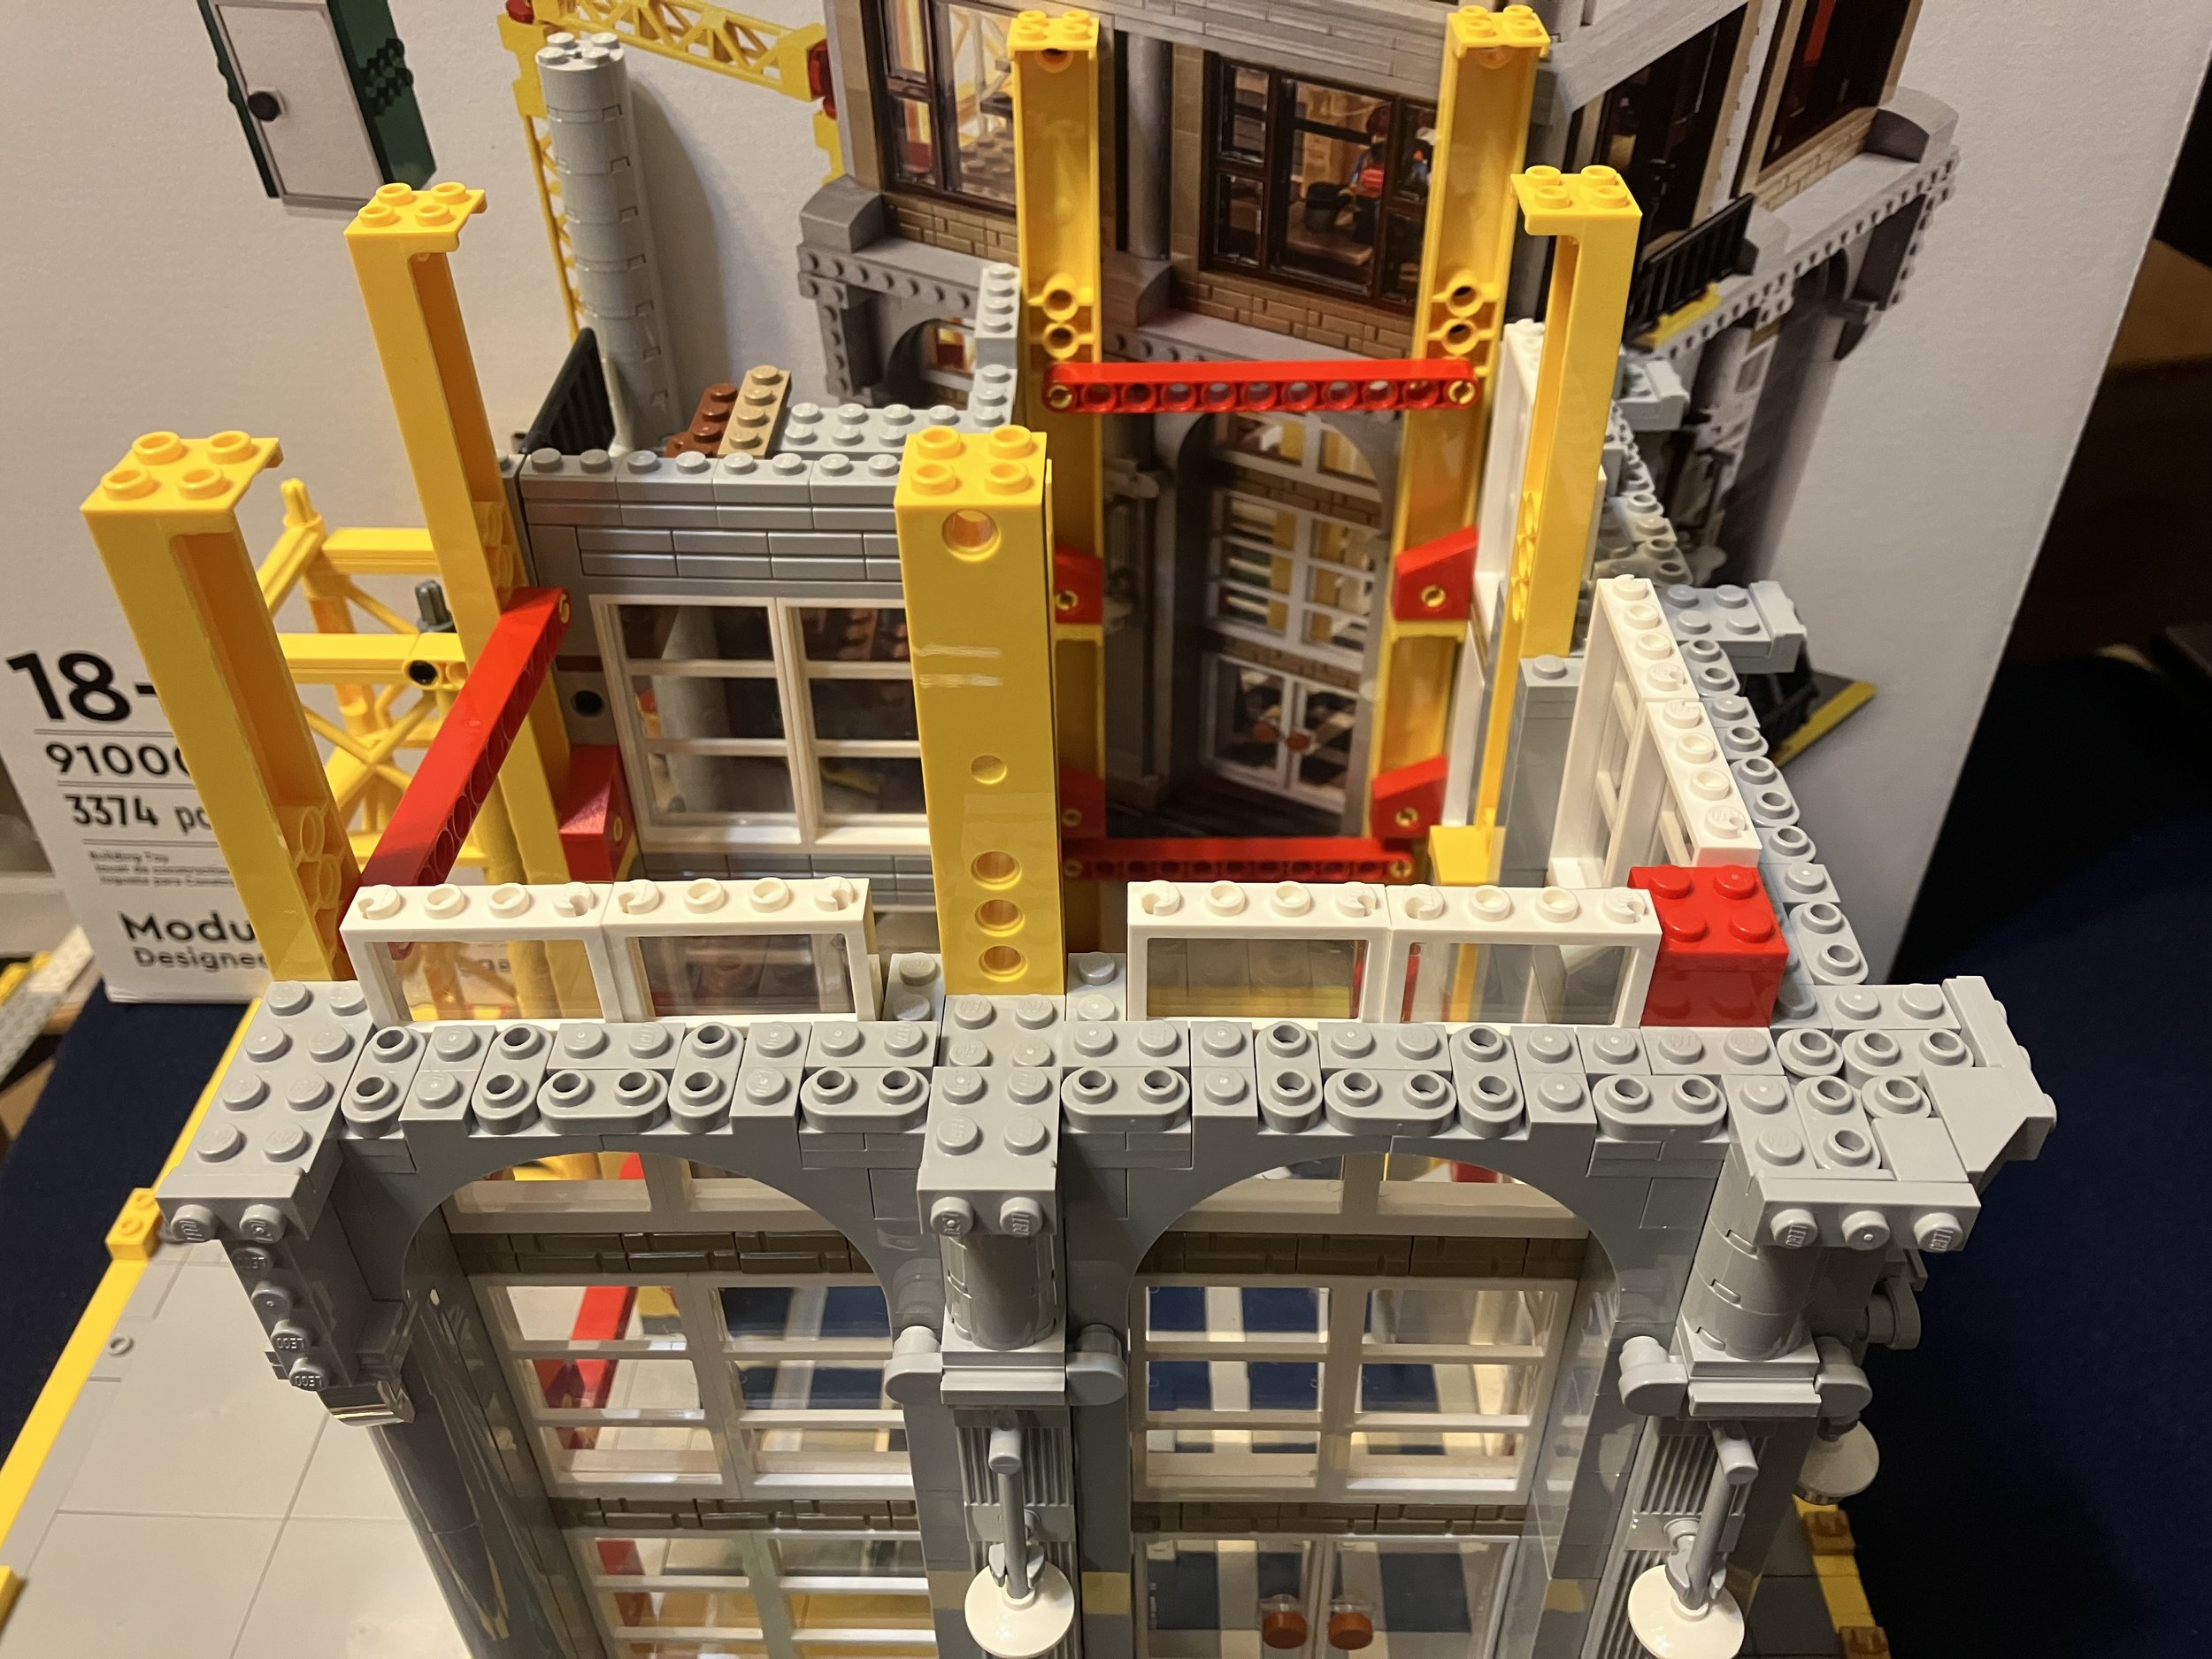 LEGO Modular Construction Site #910008